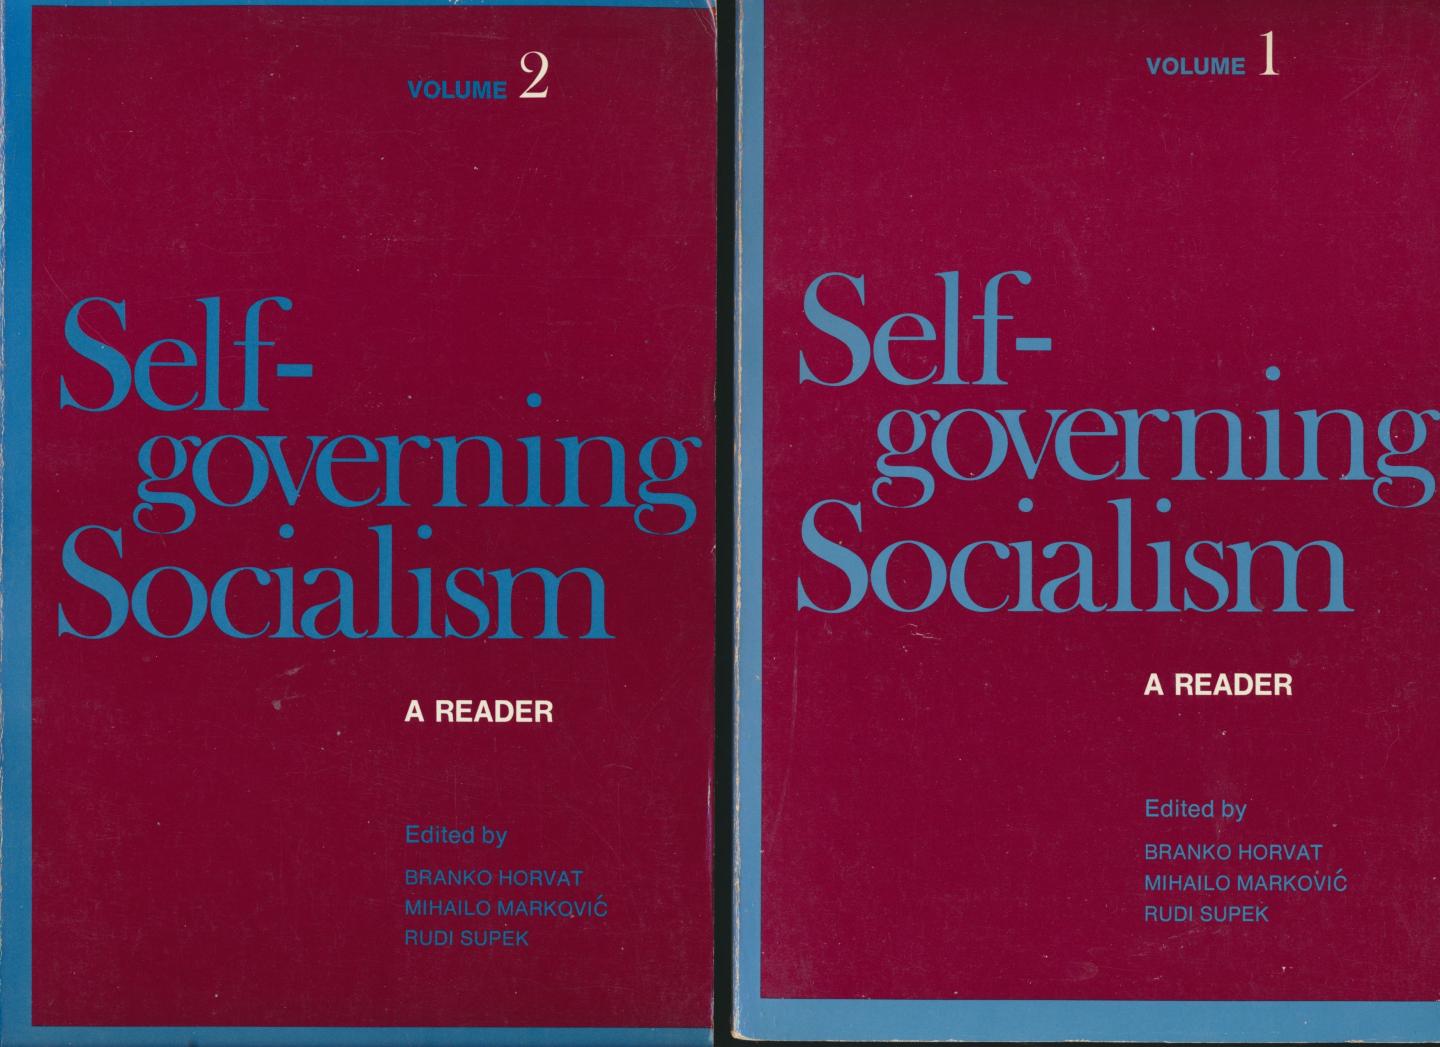 Horvat, Markovic en Supek (editors) - Self-governing socialisme, a reader. , Volume 1 en Volume 2